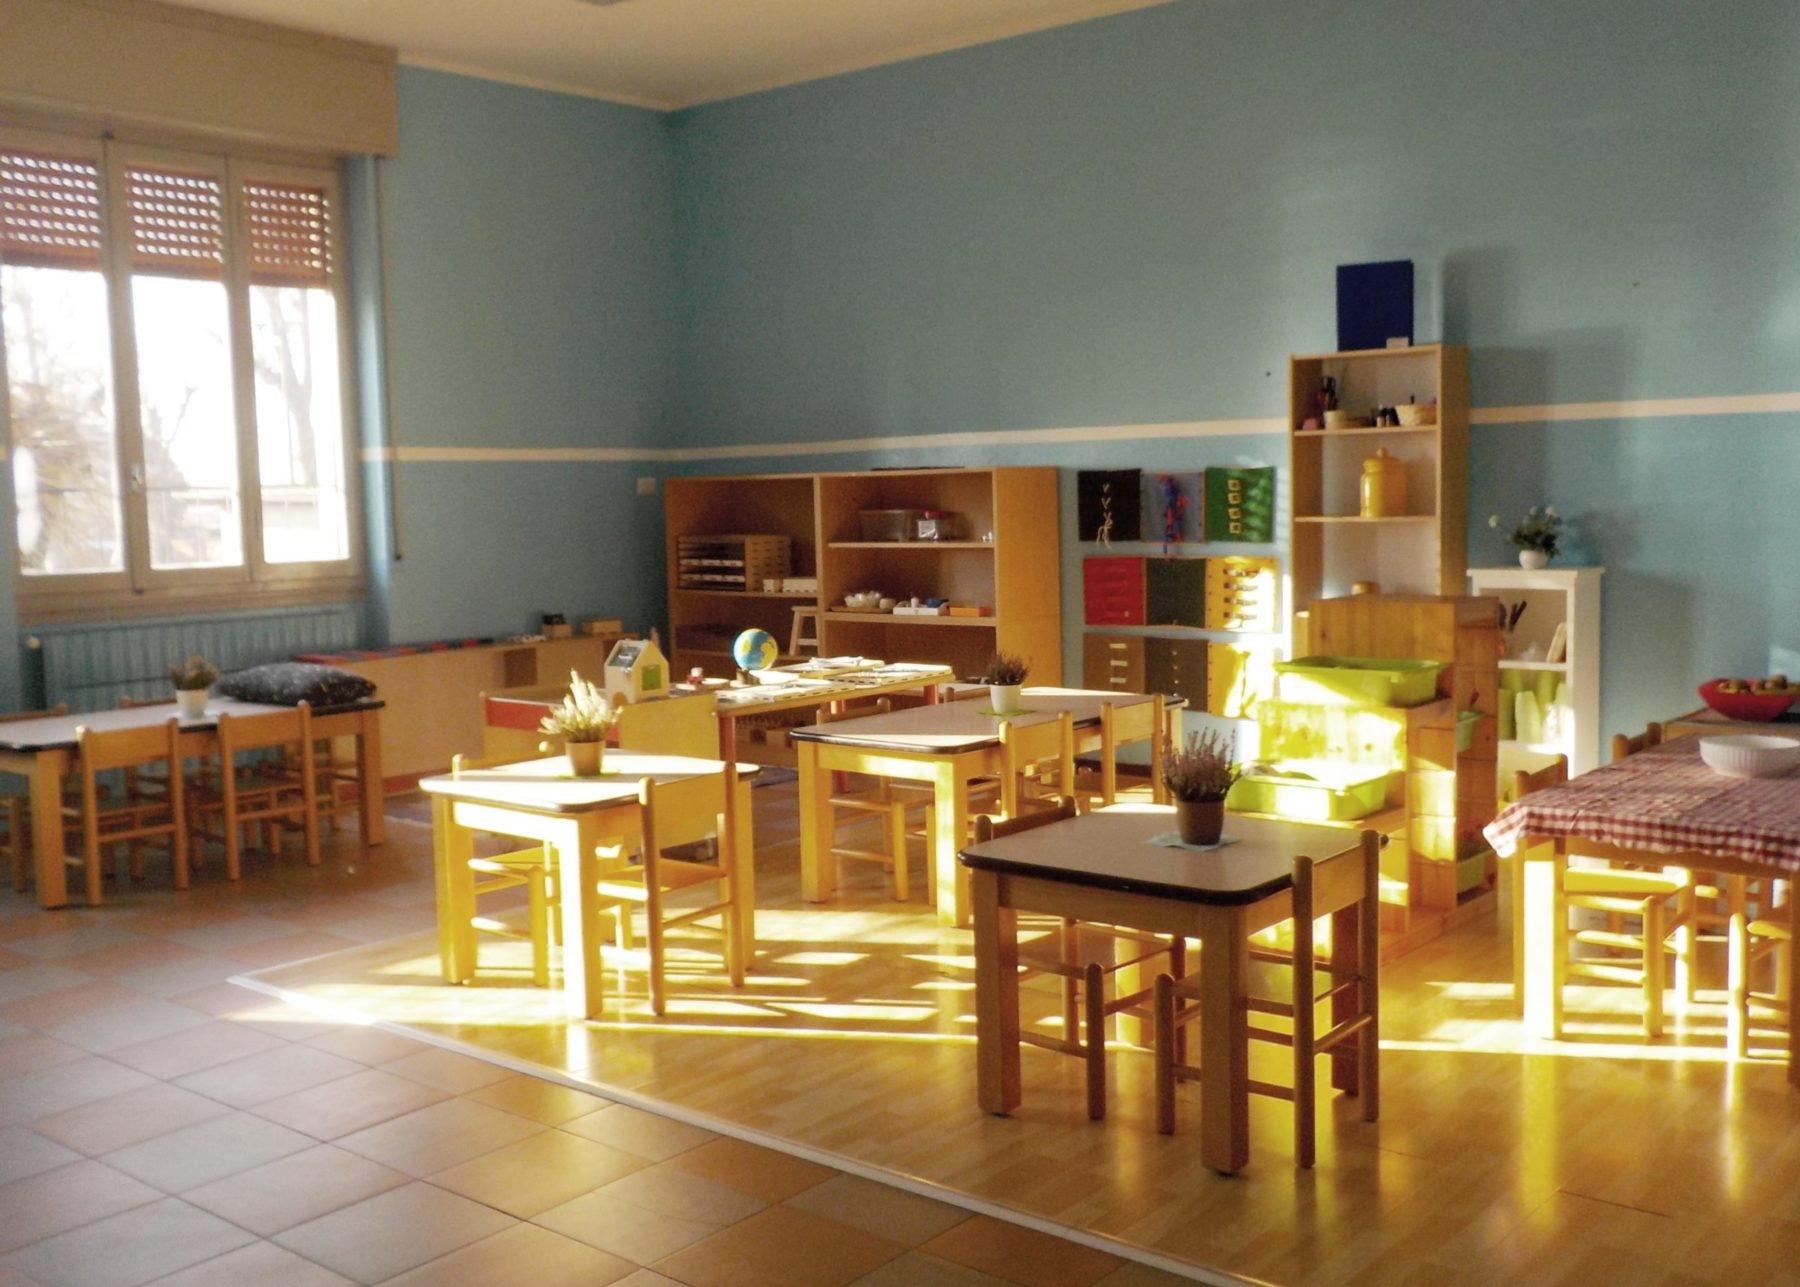 spazio montessori. Open day allo Spazio Montessori di Cerello gestito dall'Aps "Casa degli angeli" - 17/01/2020